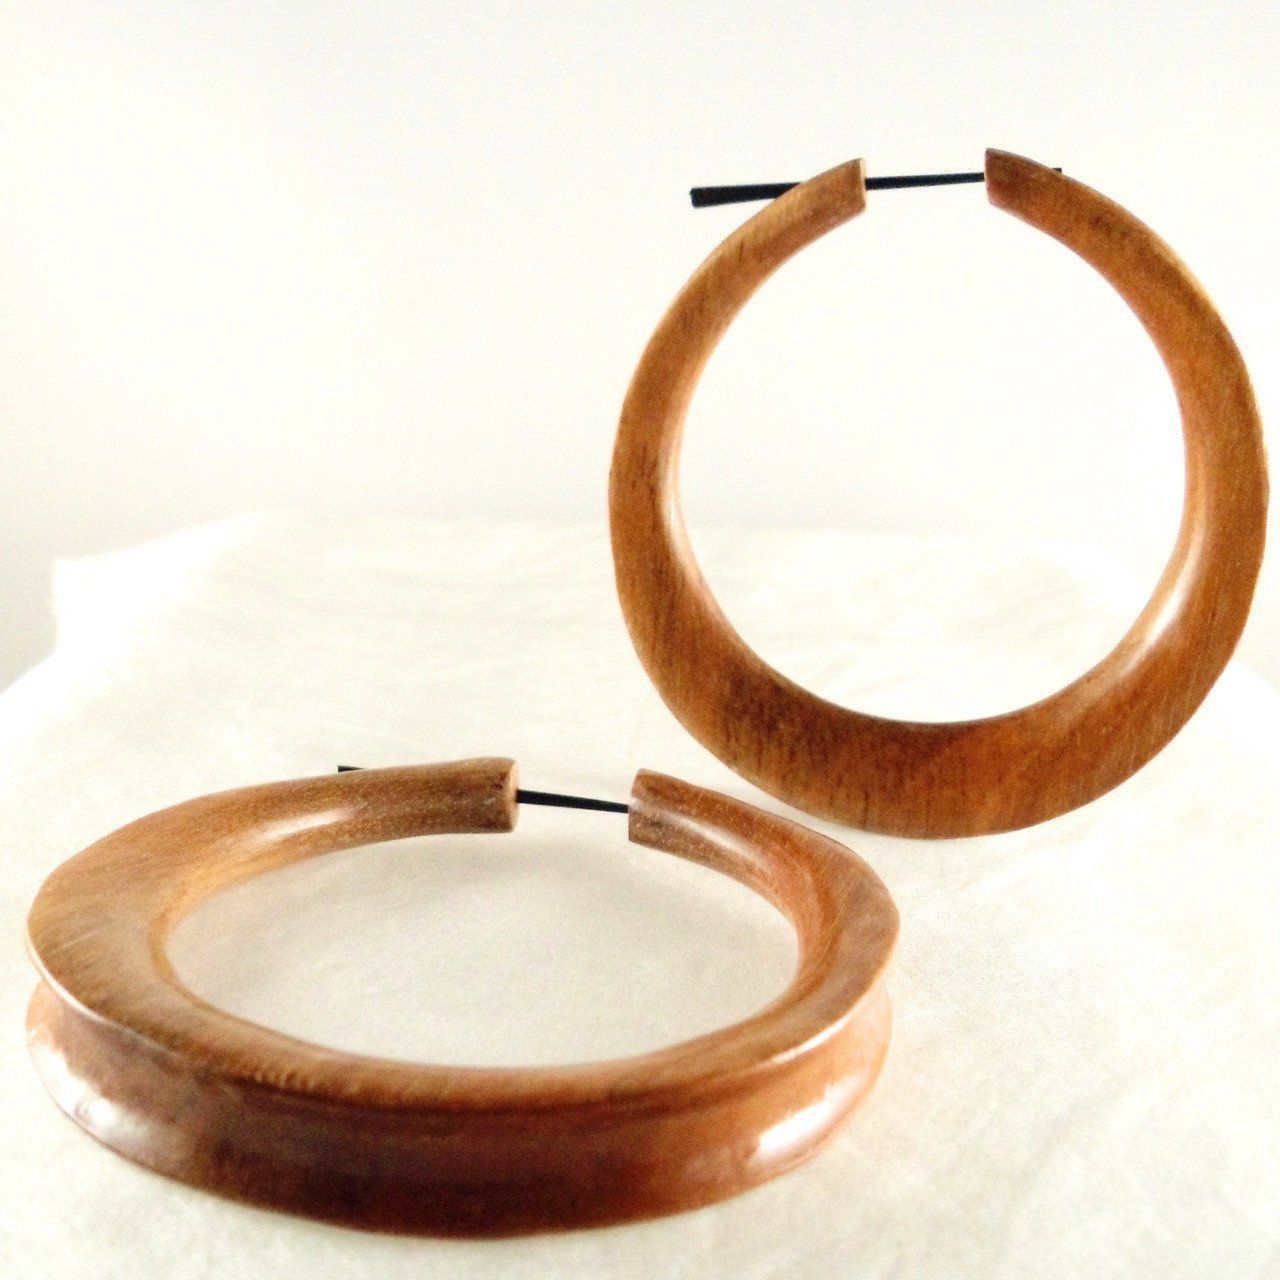 Wood Earrings :|: Jupiter Hoop. Extra Large, Sapote Wood Earrings. 2 5/8 inch W x 2 3/4 inch L. | Wooden Hoop Earrings